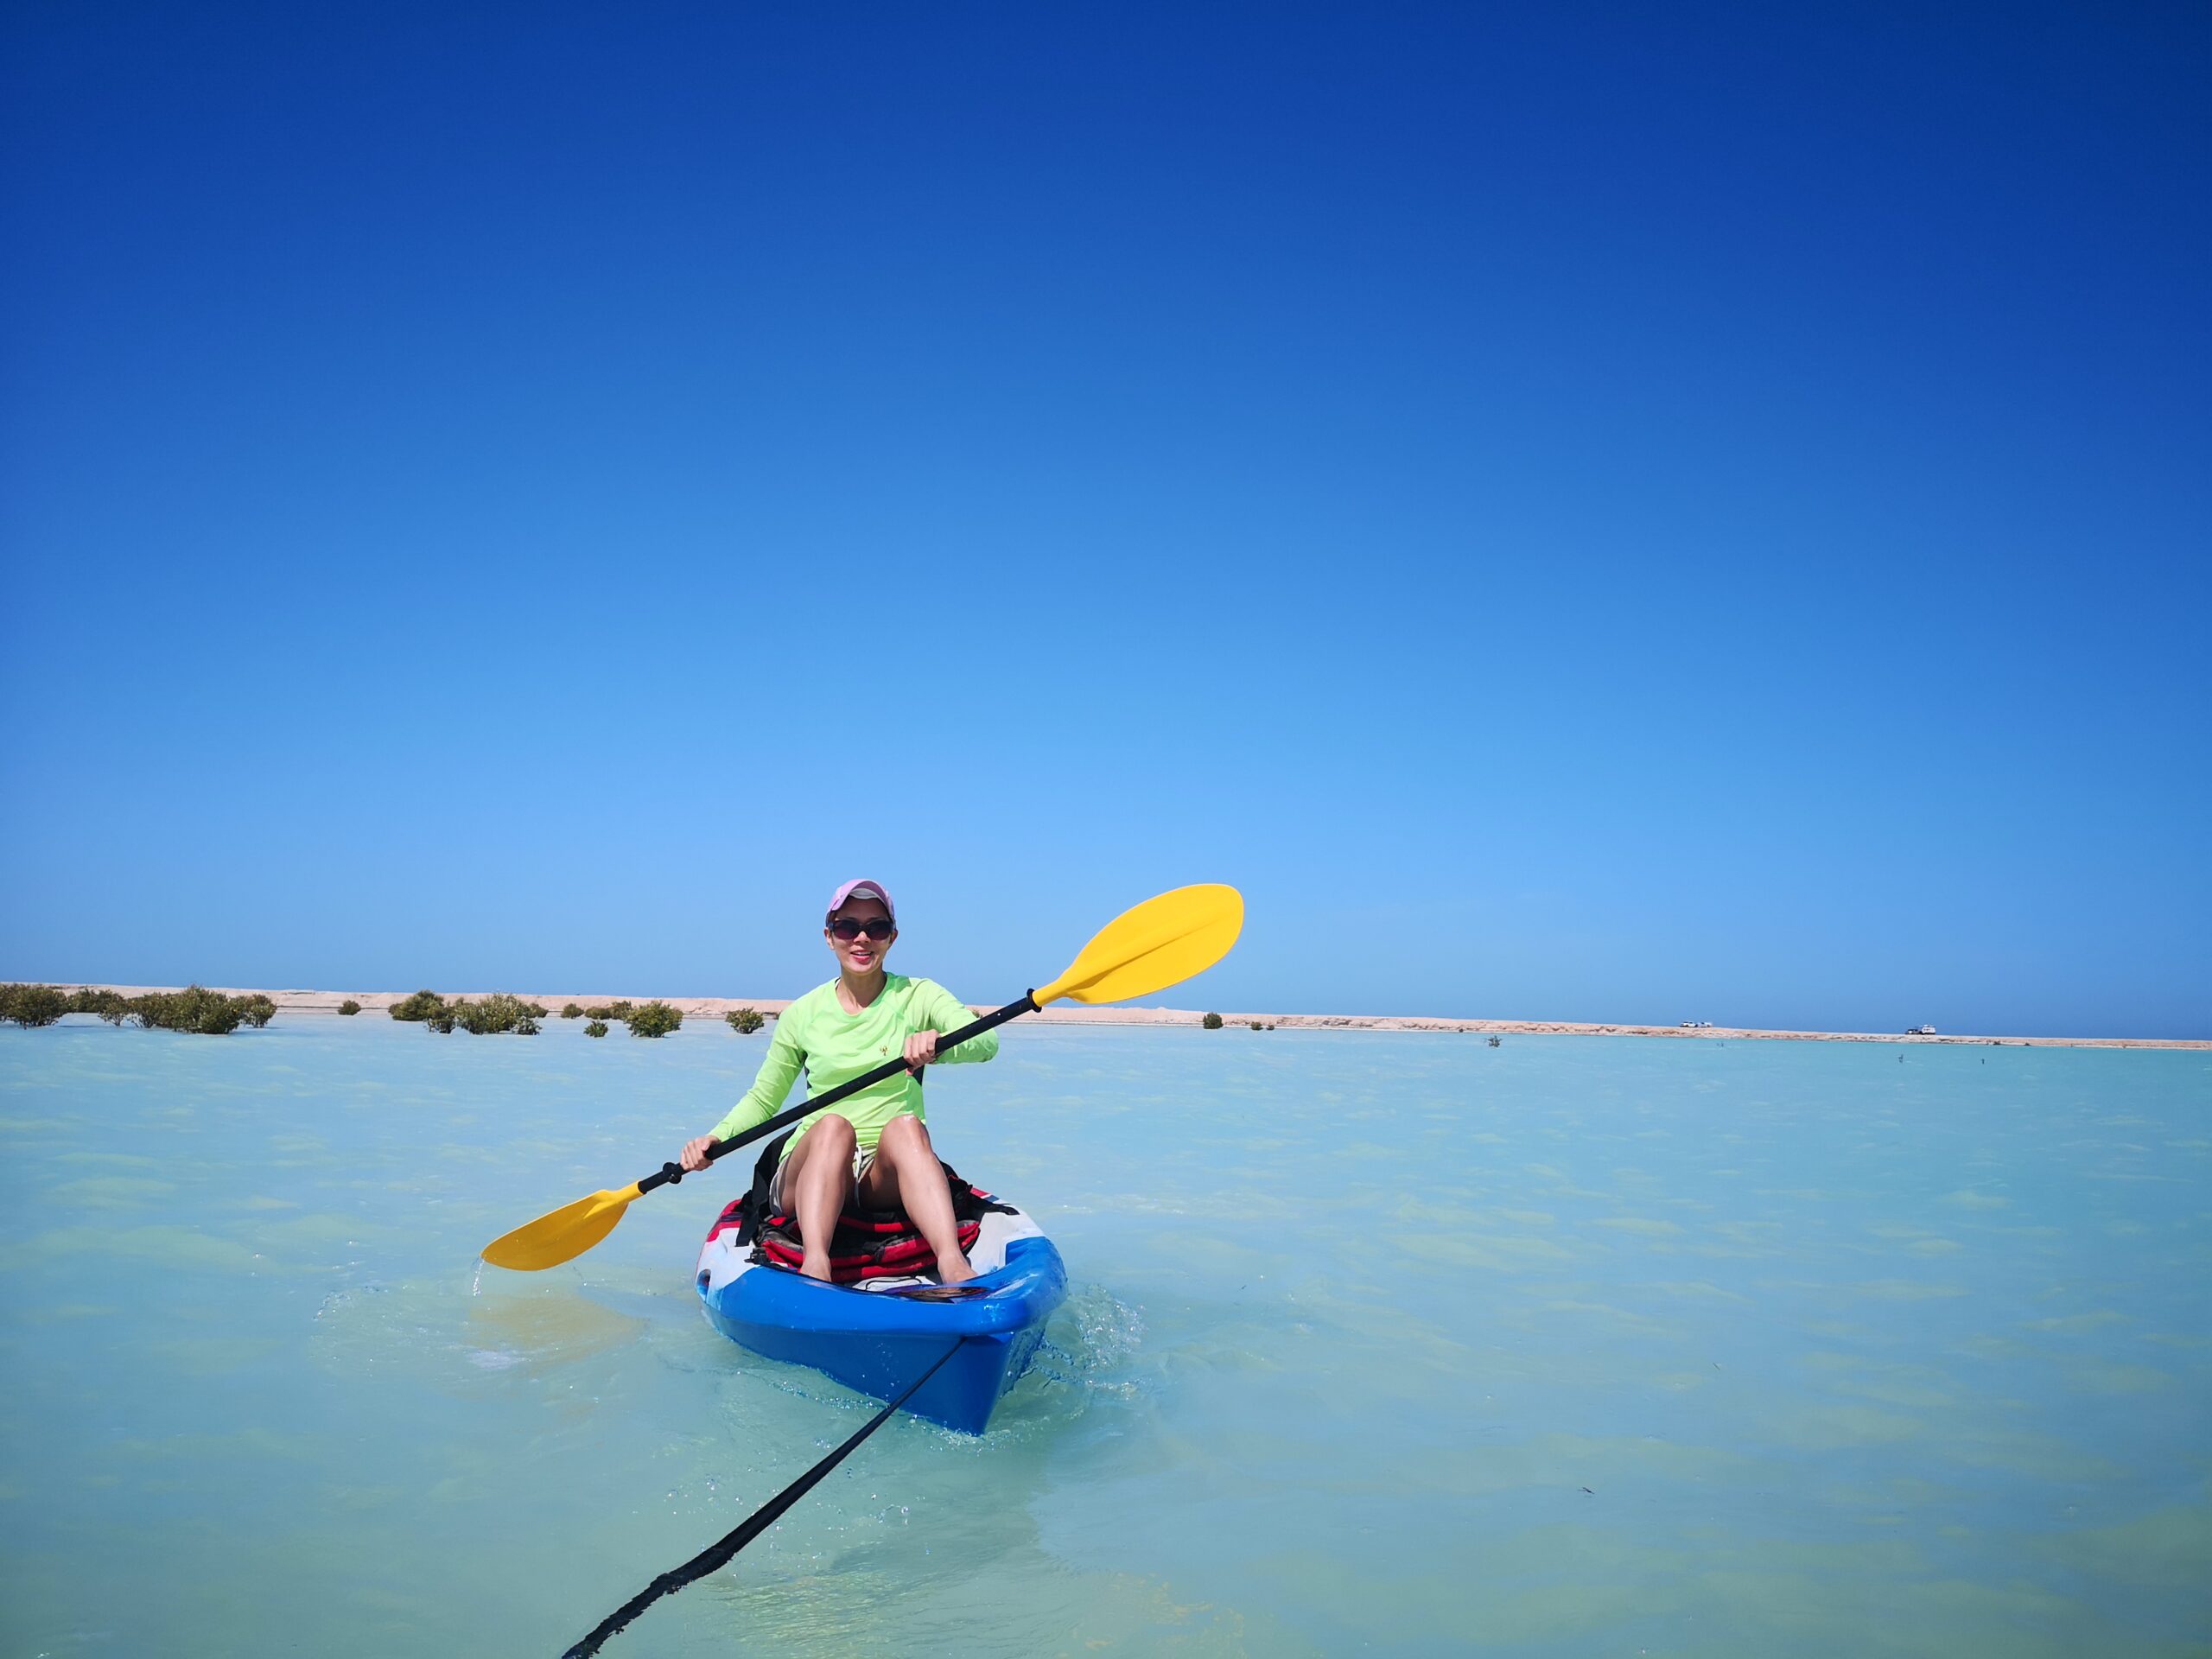 Kayaking between UAE’s remote islands